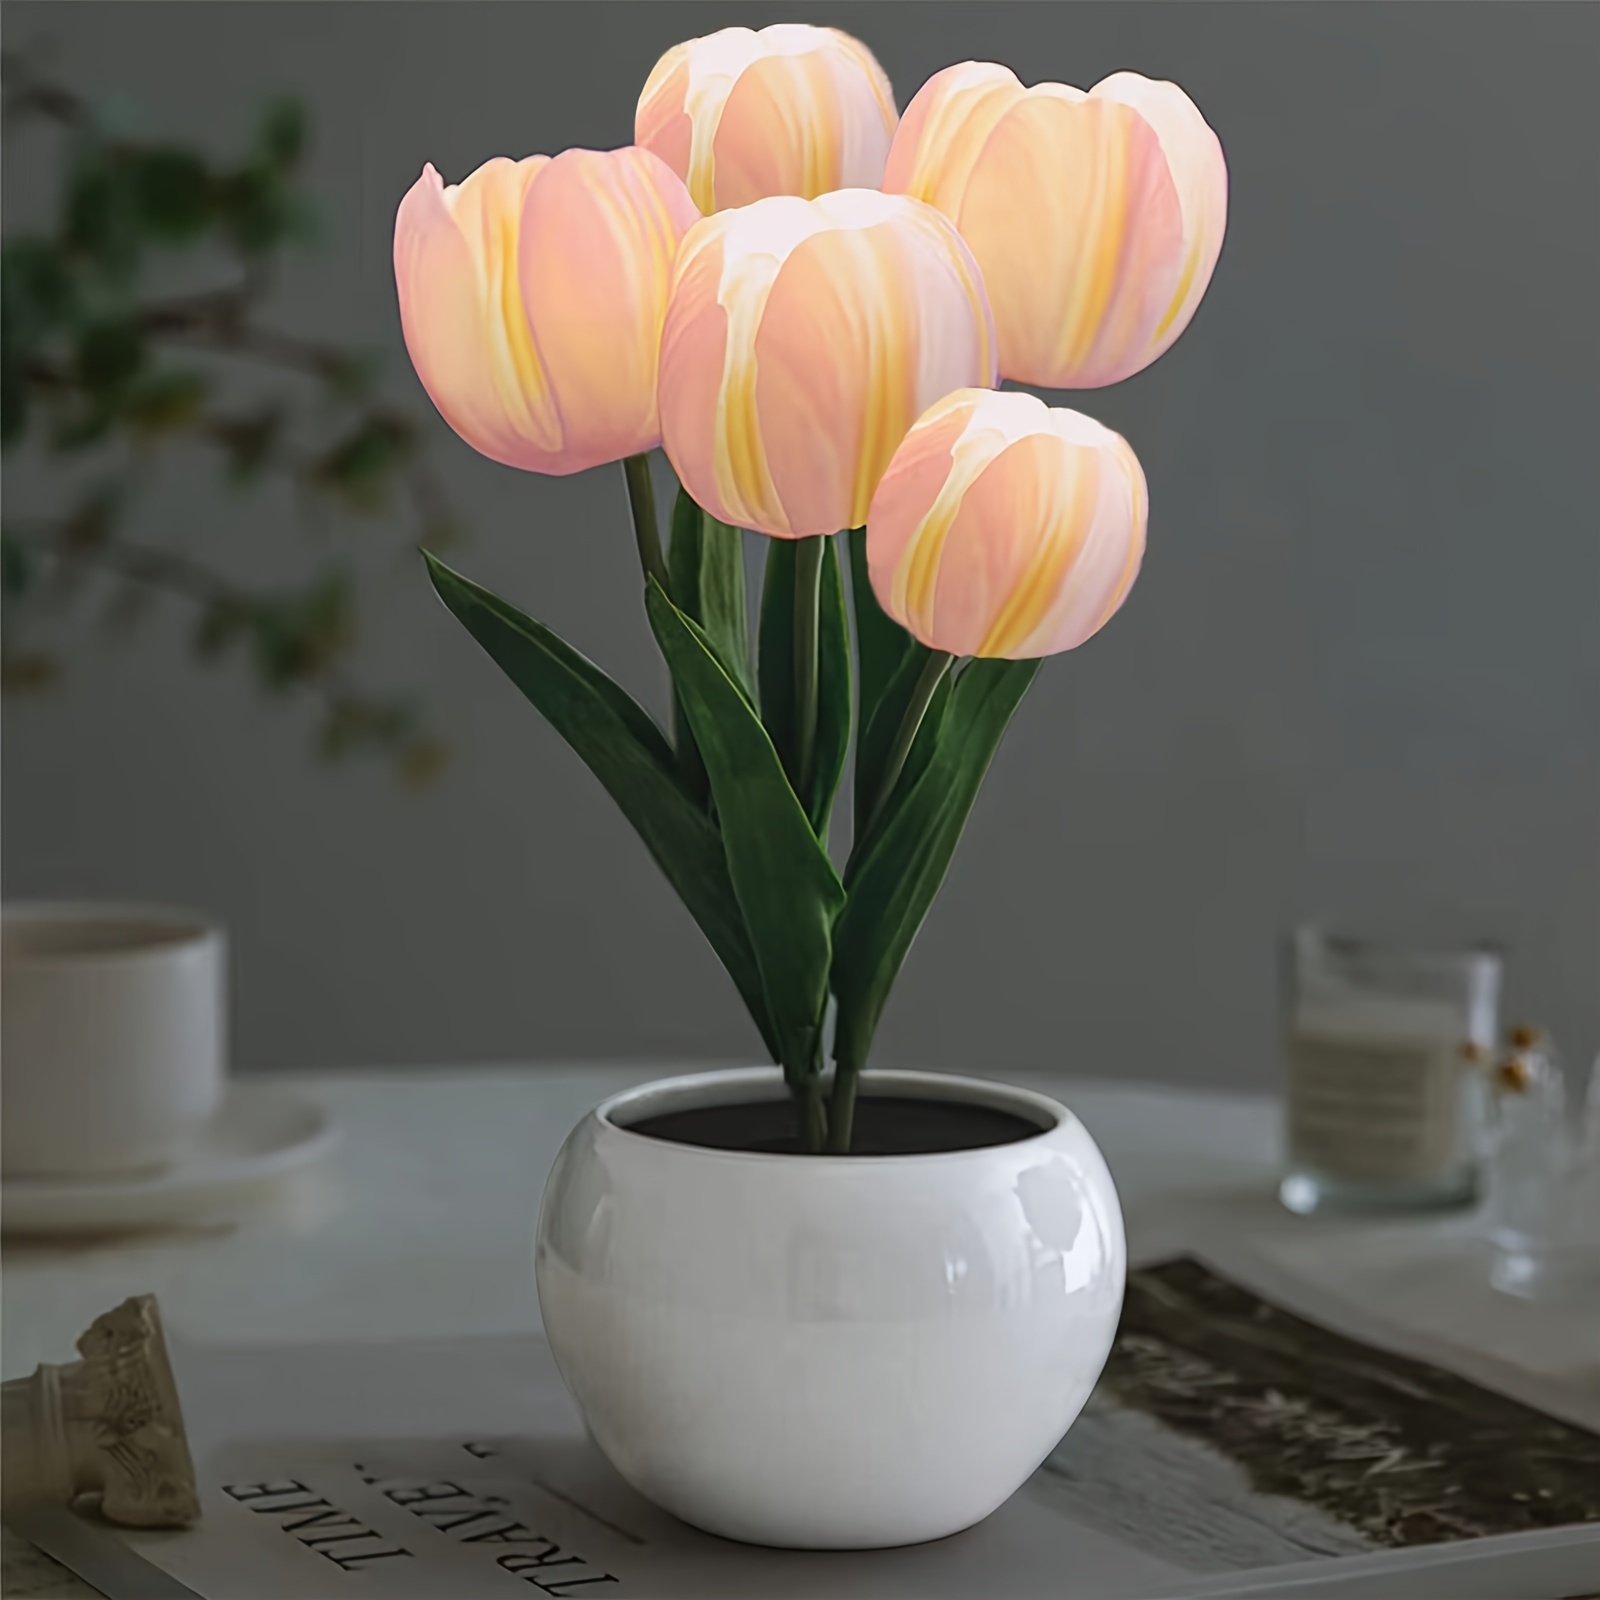 Luz De Tulipan - Temu